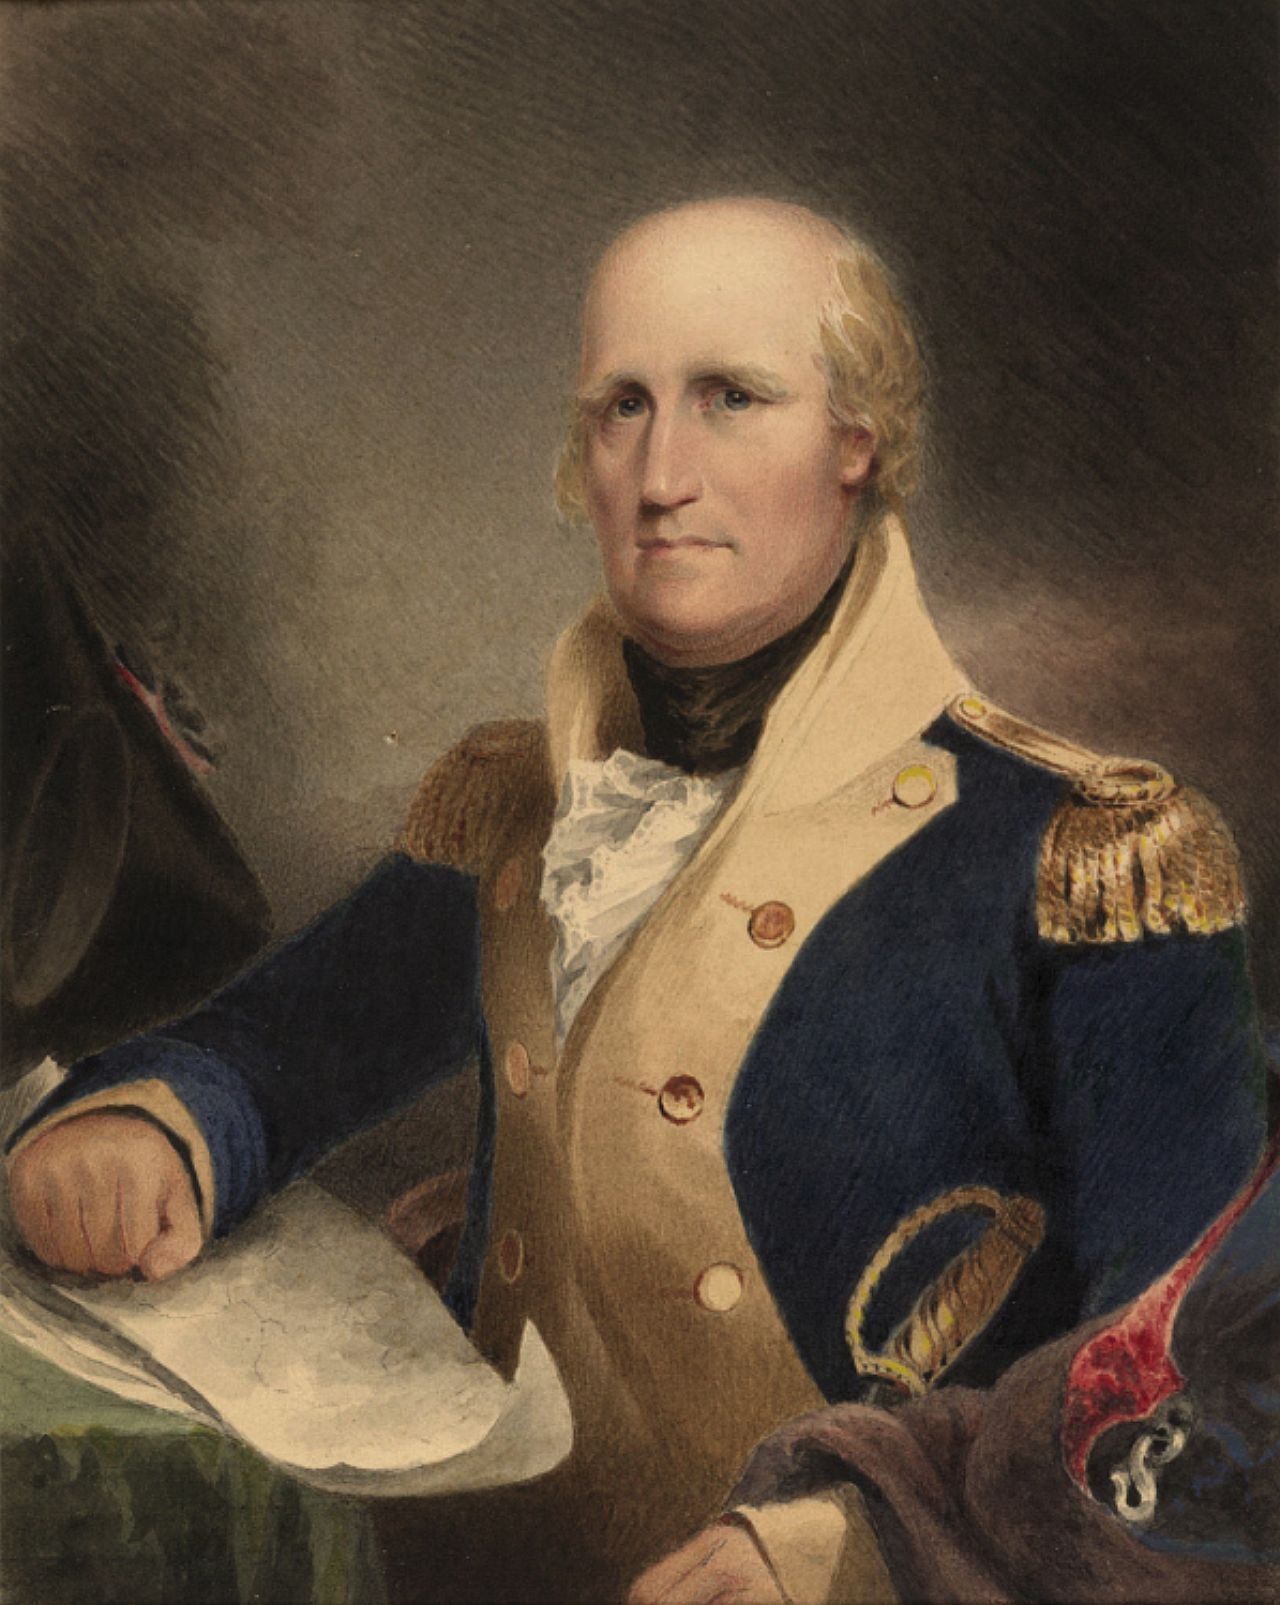 General George Rogers Clark